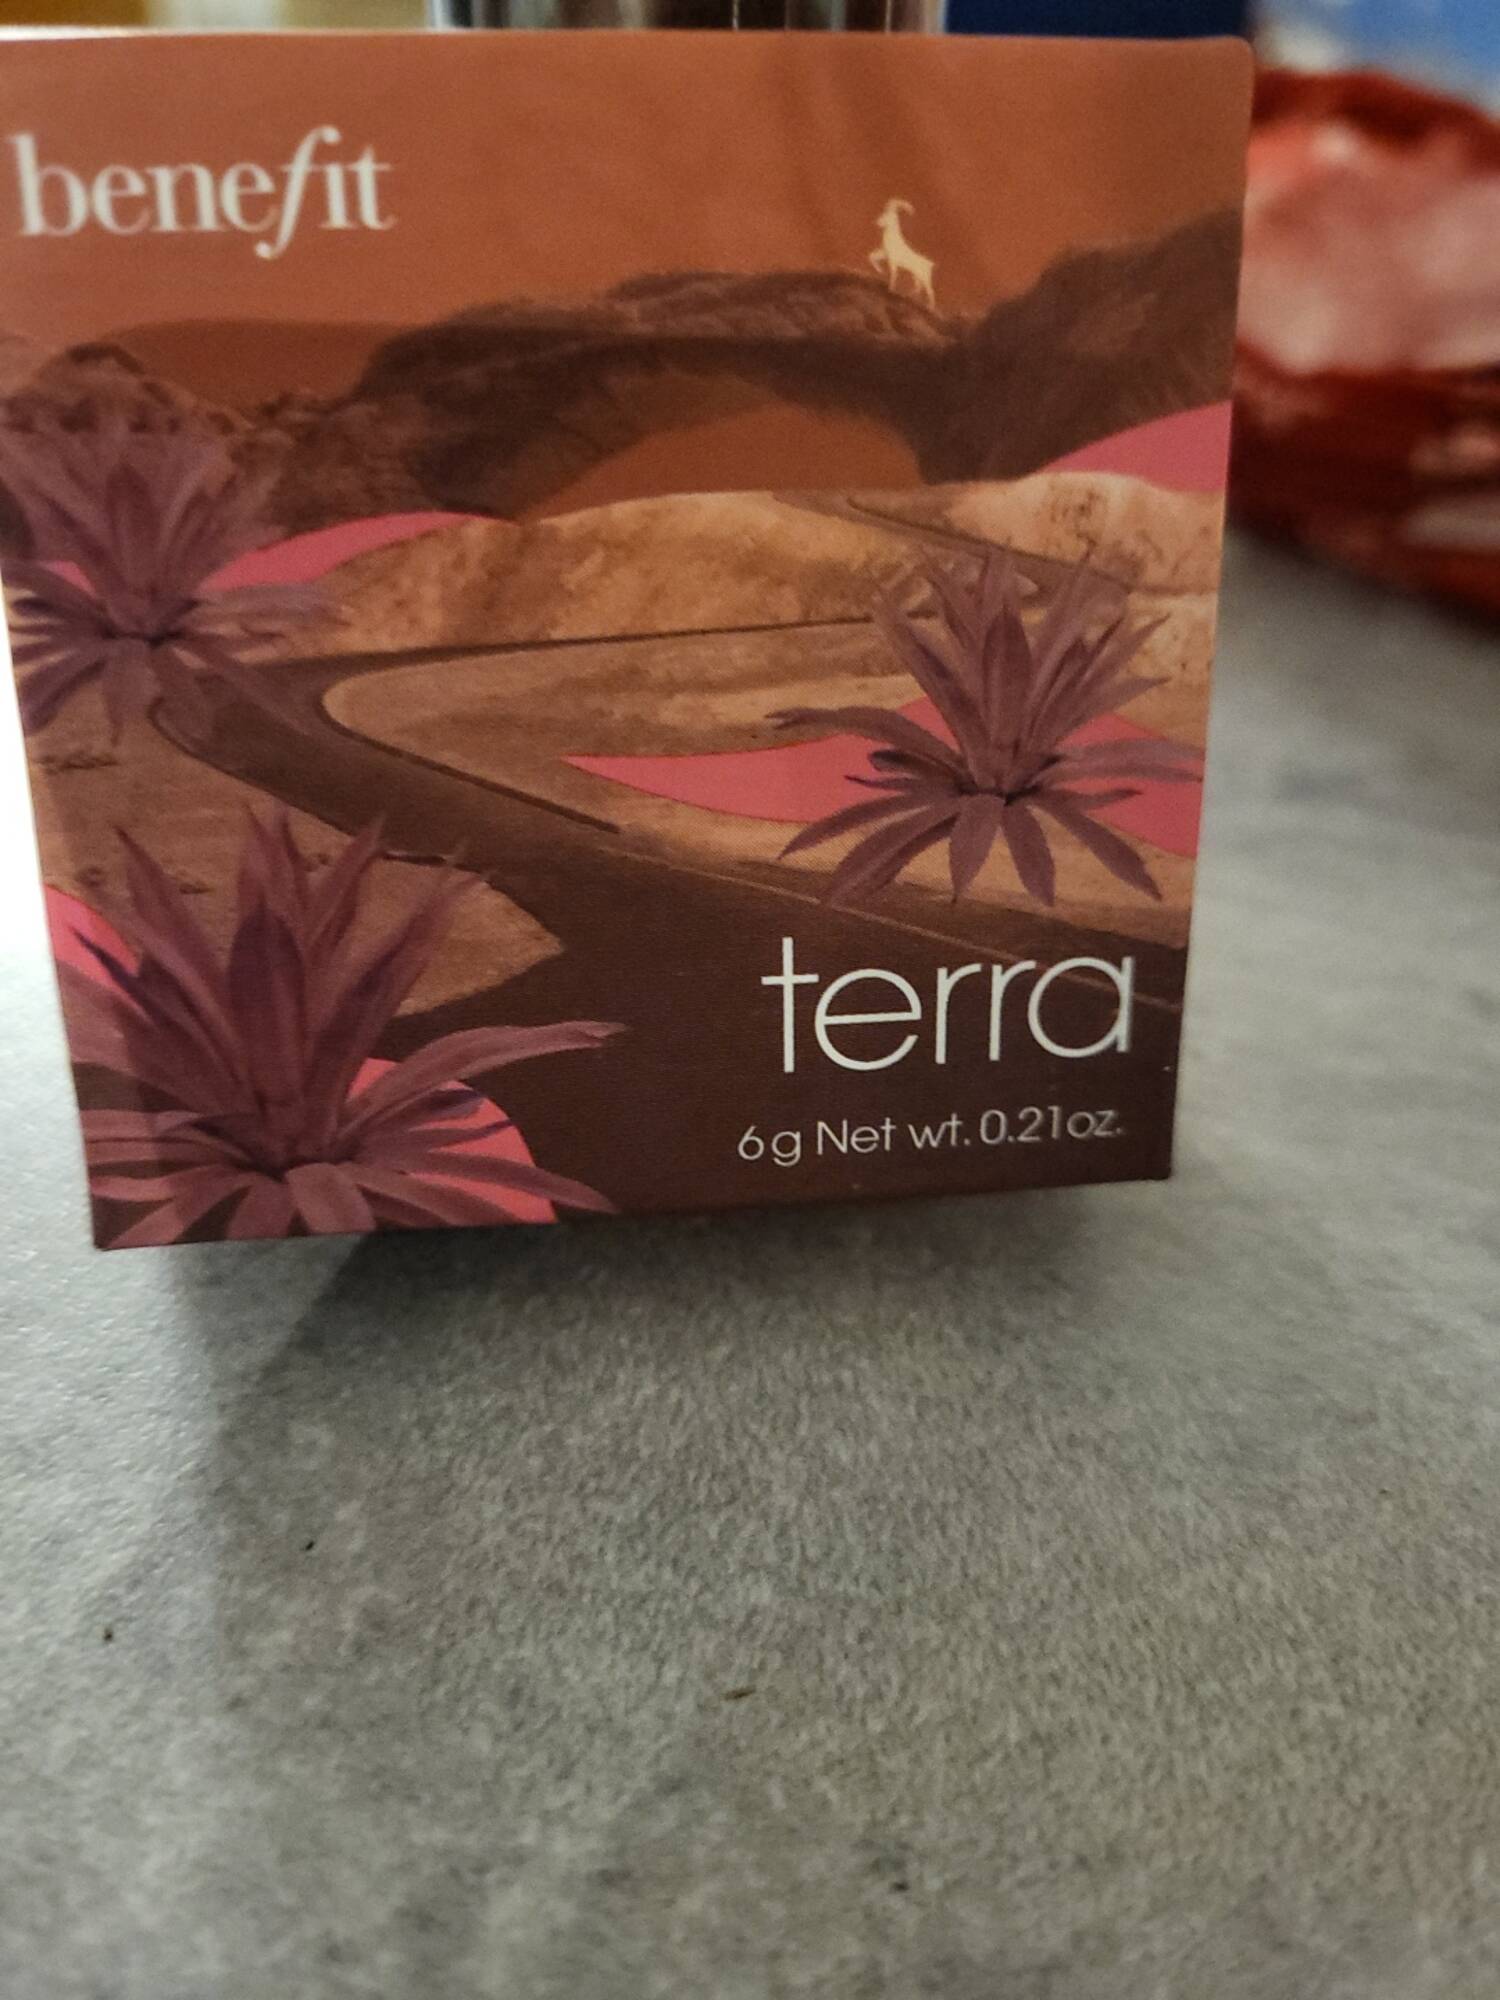 BENEFIT - Terra - Blush bronzer